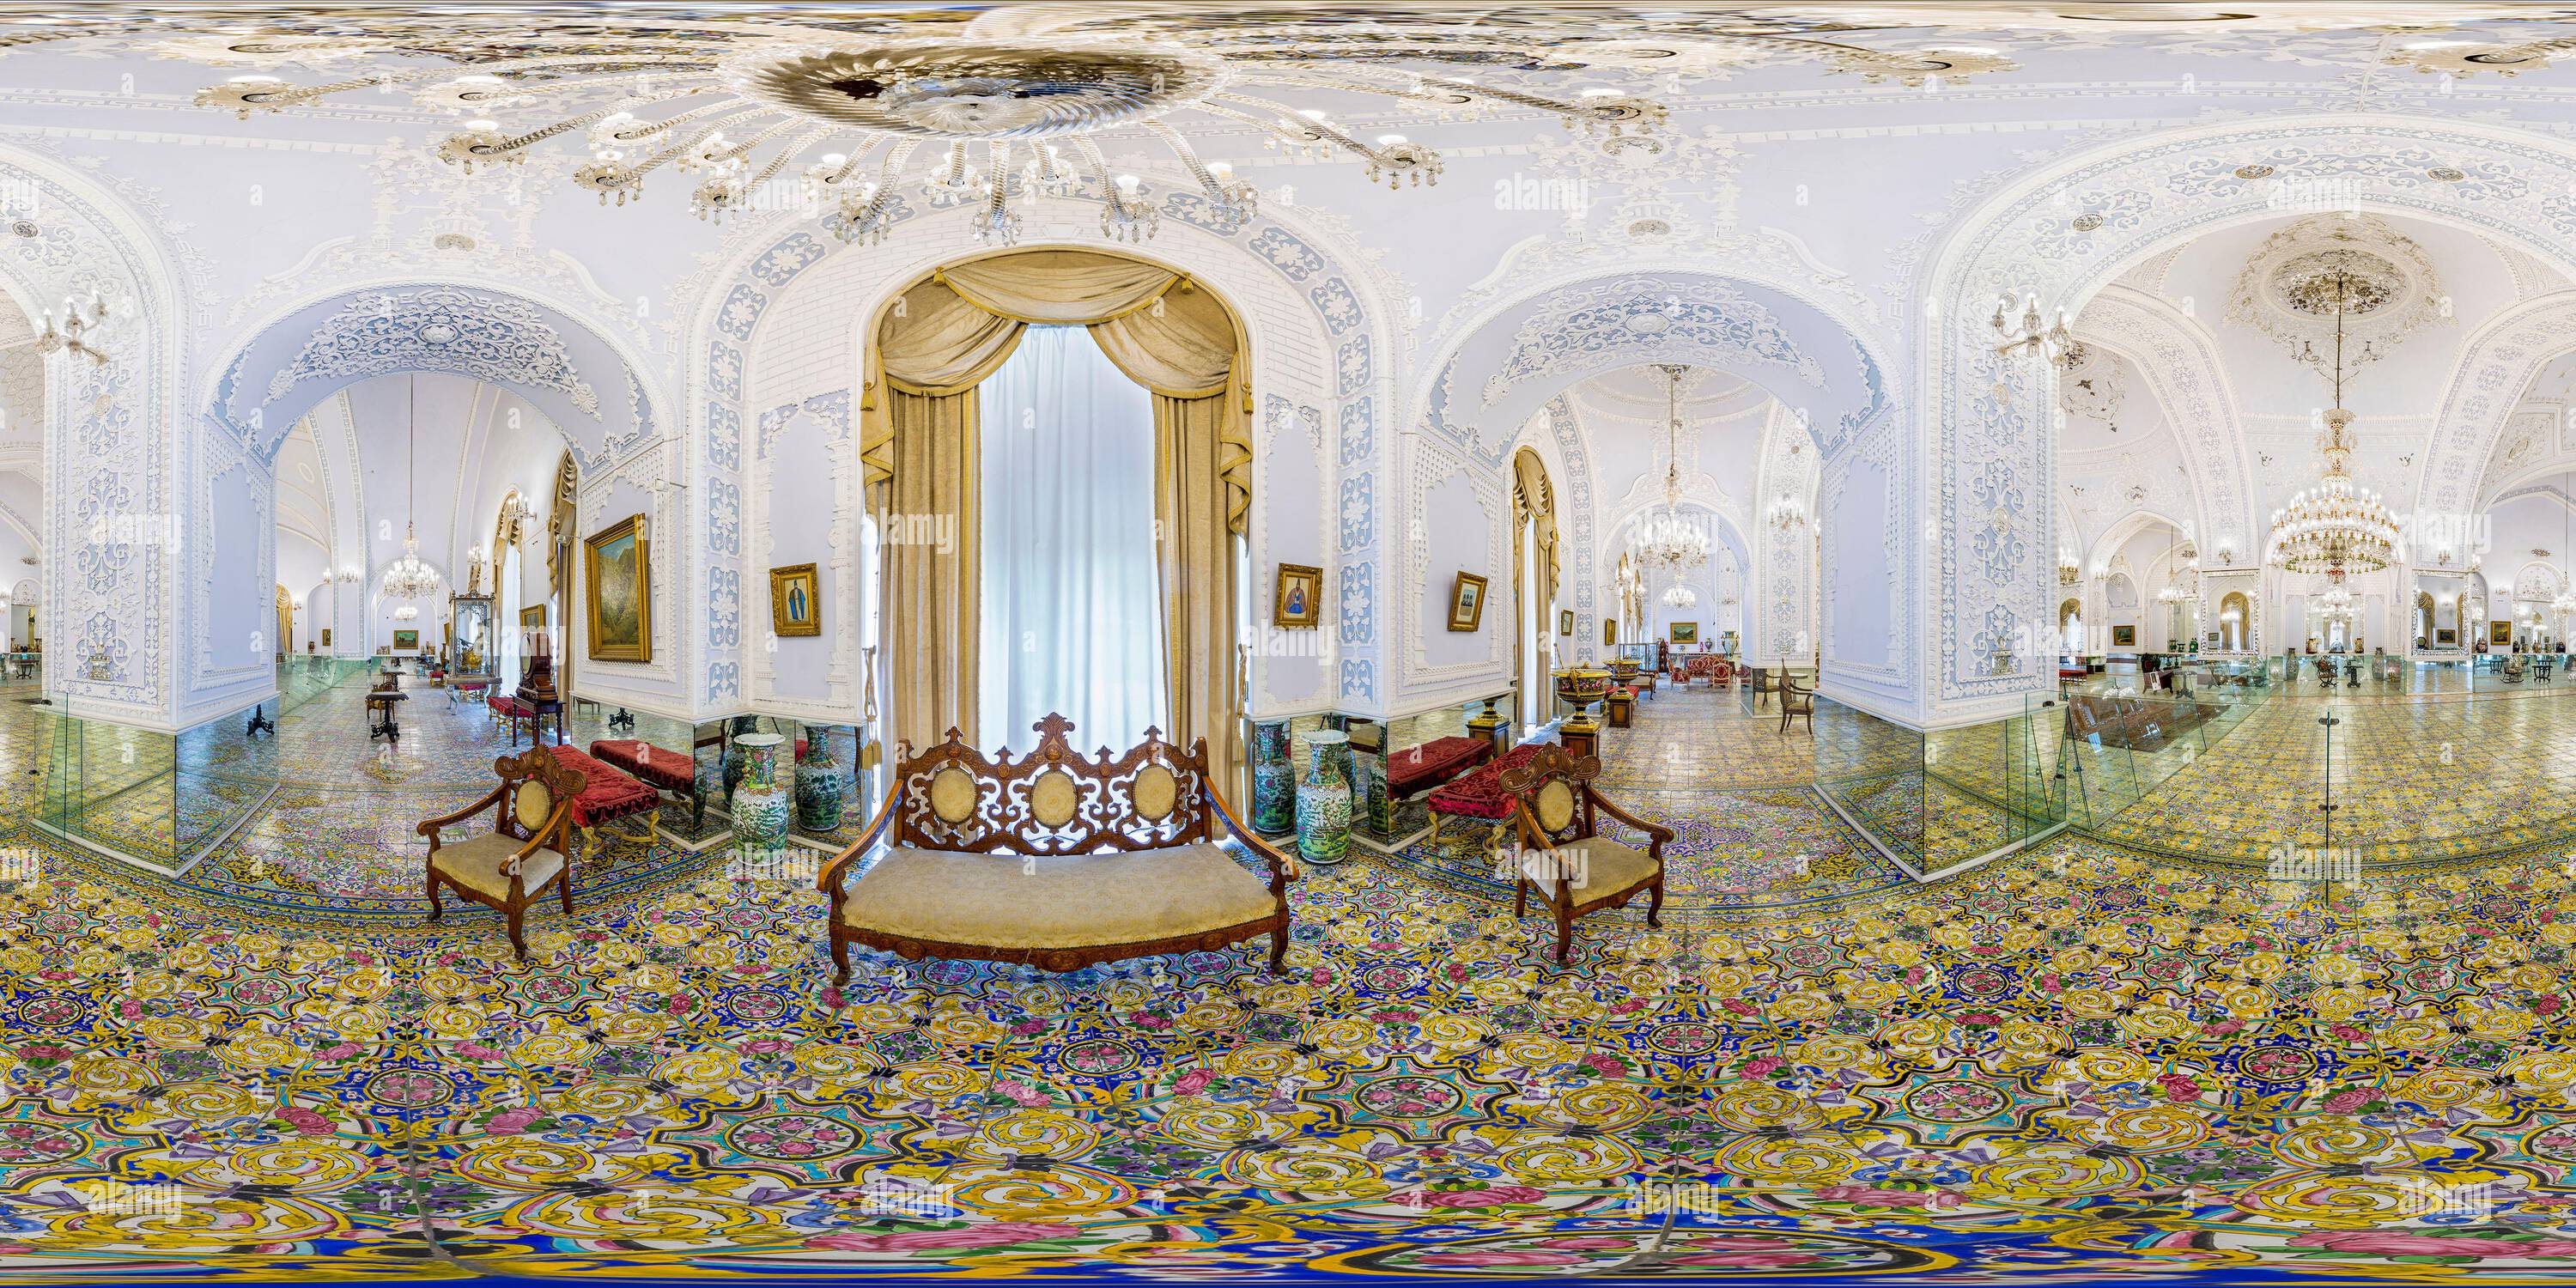 Visualizzazione panoramica a 360 gradi di Palazzo Golestan , Patrimonio Mondiale dell'Umanita'